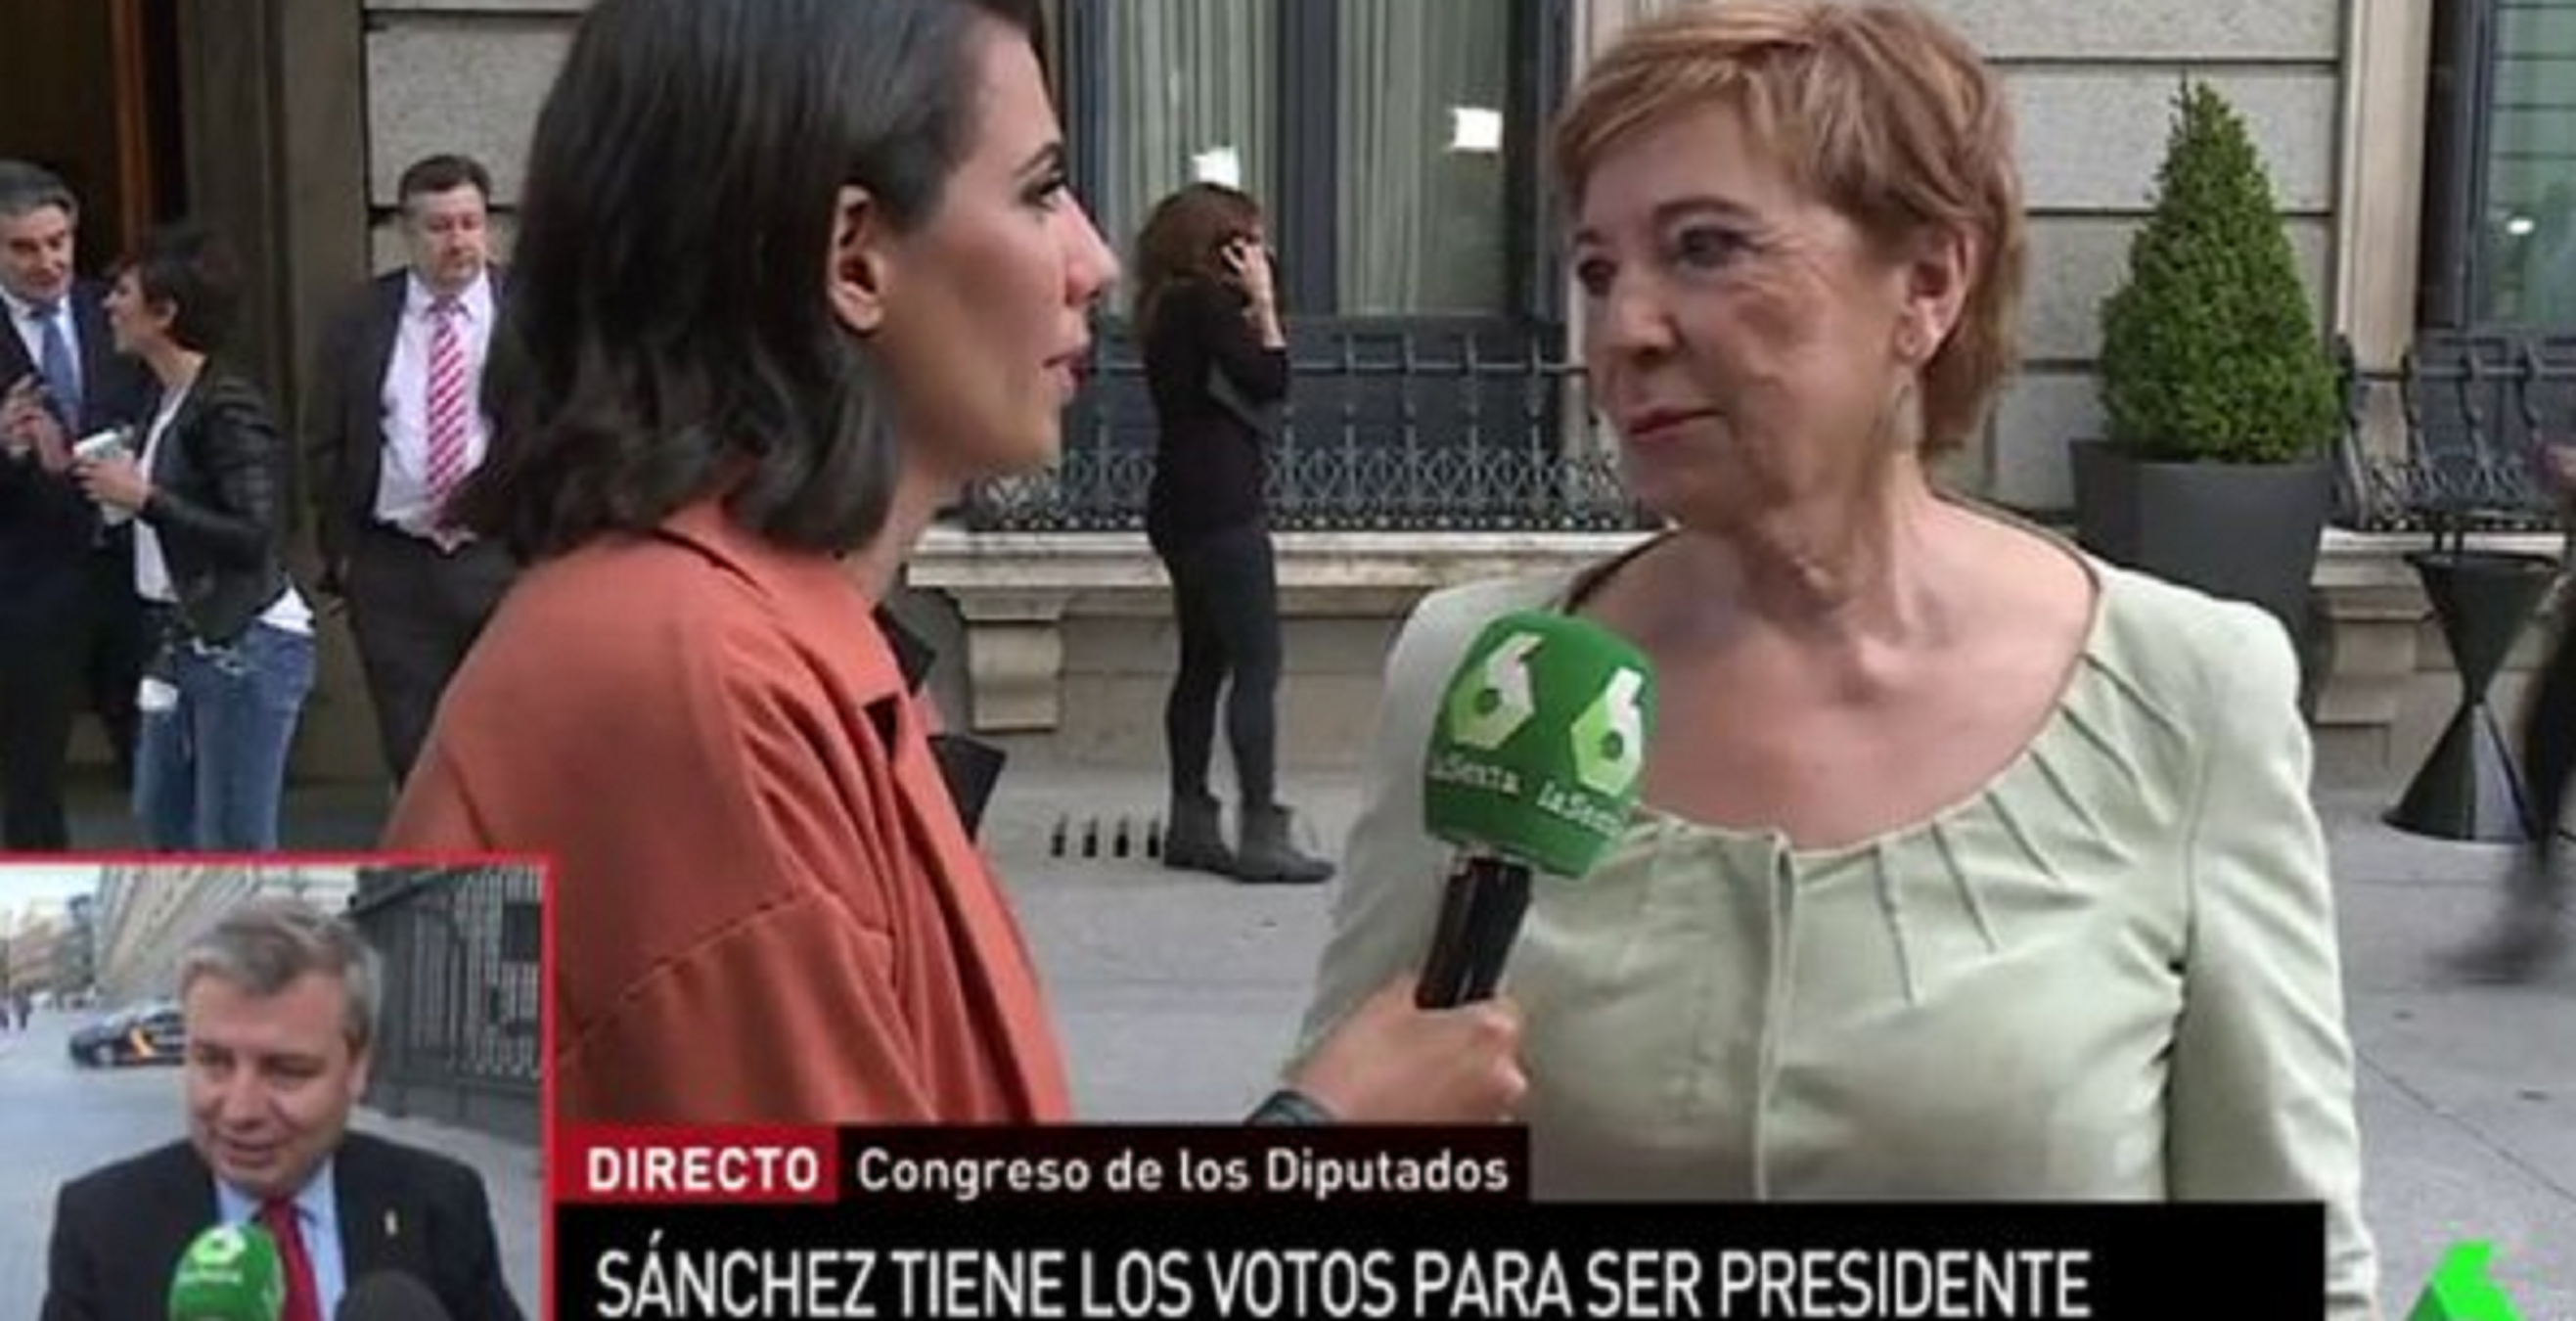 Villalobos pierde los papeles en La Sexta: "Le dais caña al PP to'l puto día"